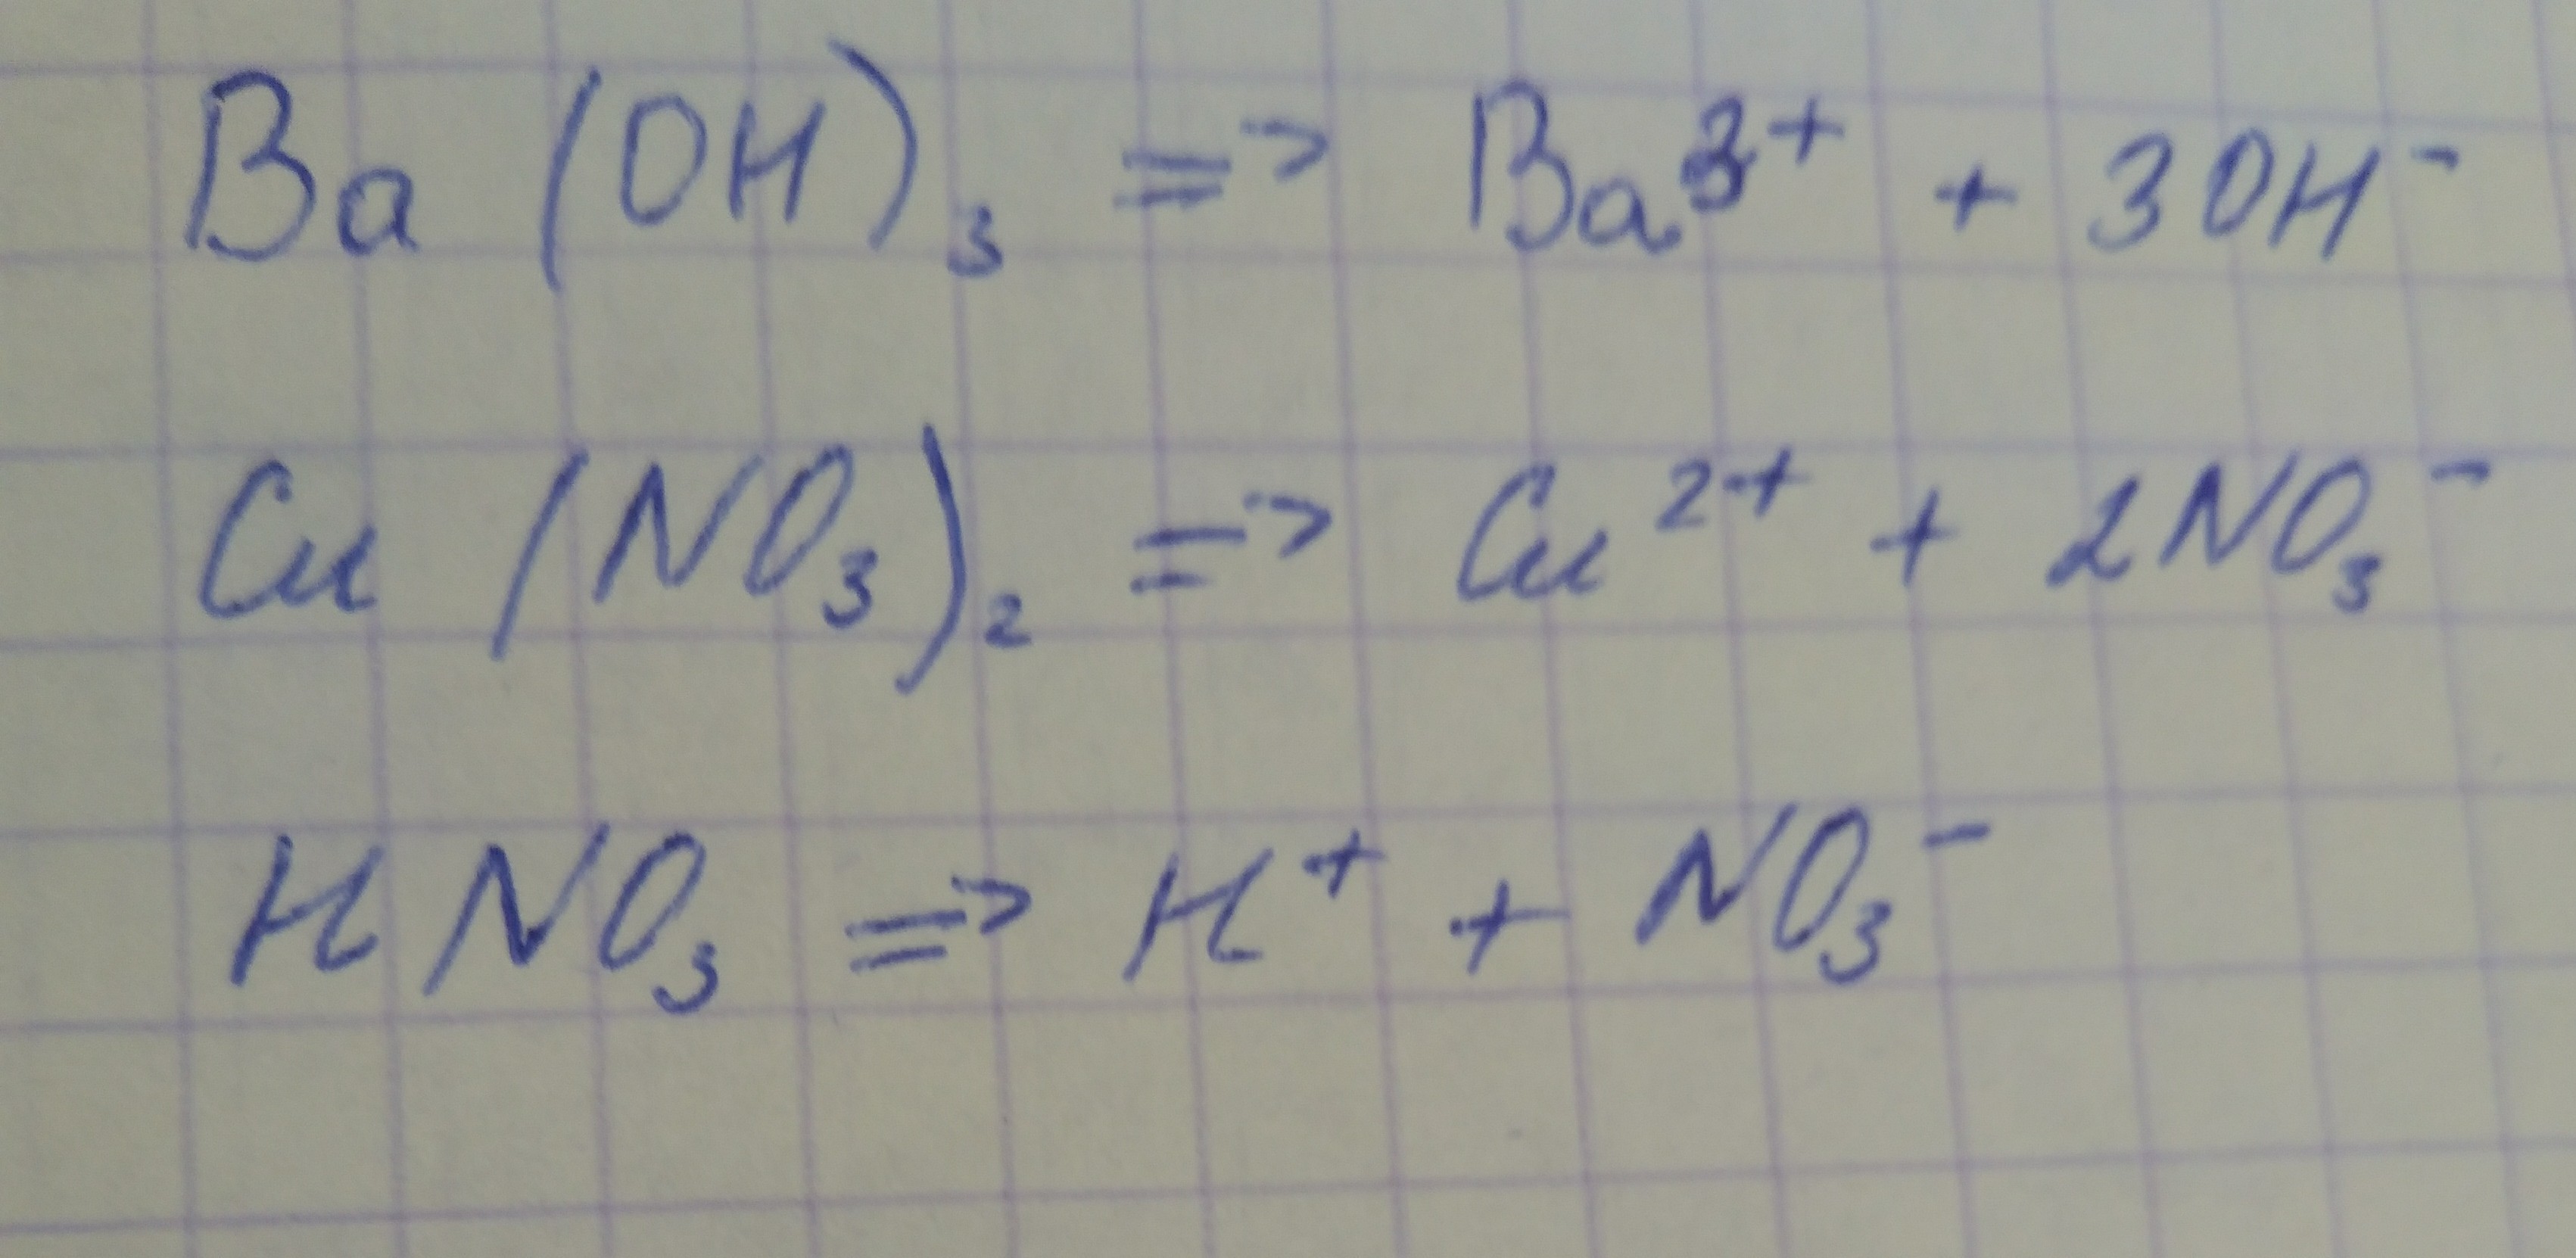 Cui cu no3 2. Составьте уравнение диссоциации веществ cu no3. Напишите диссоциацию вещества ba(no3)2. Ch3oh диссоциация. Напишите уравнение полной диссоциации веществ ba Oh 2.